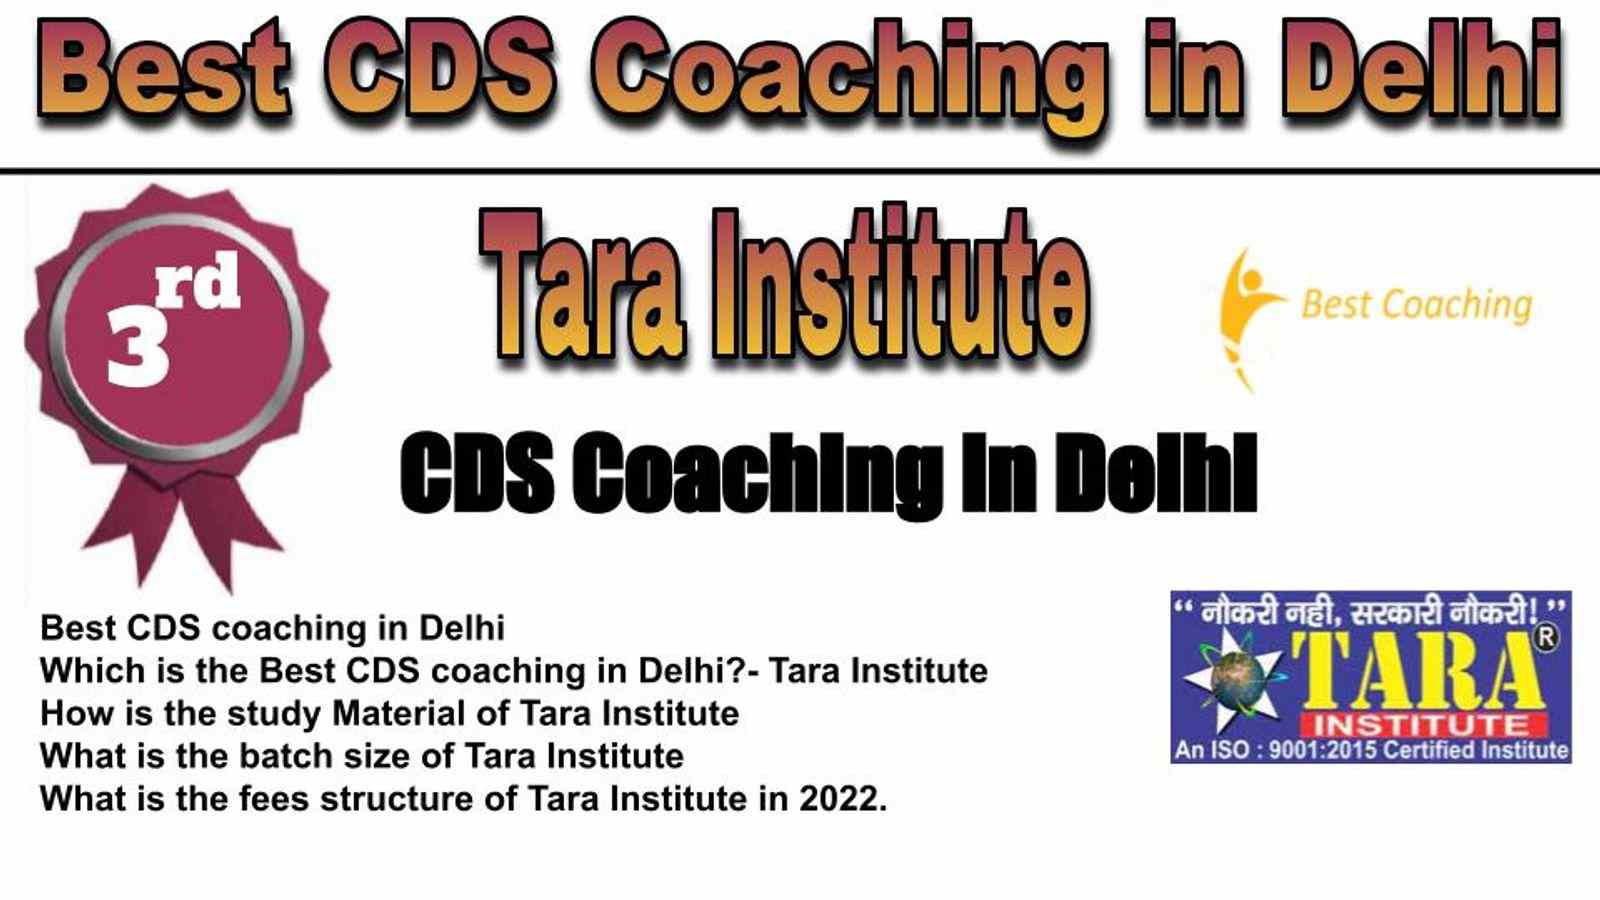 Rank 3 Best CDS Coaching in Delhi